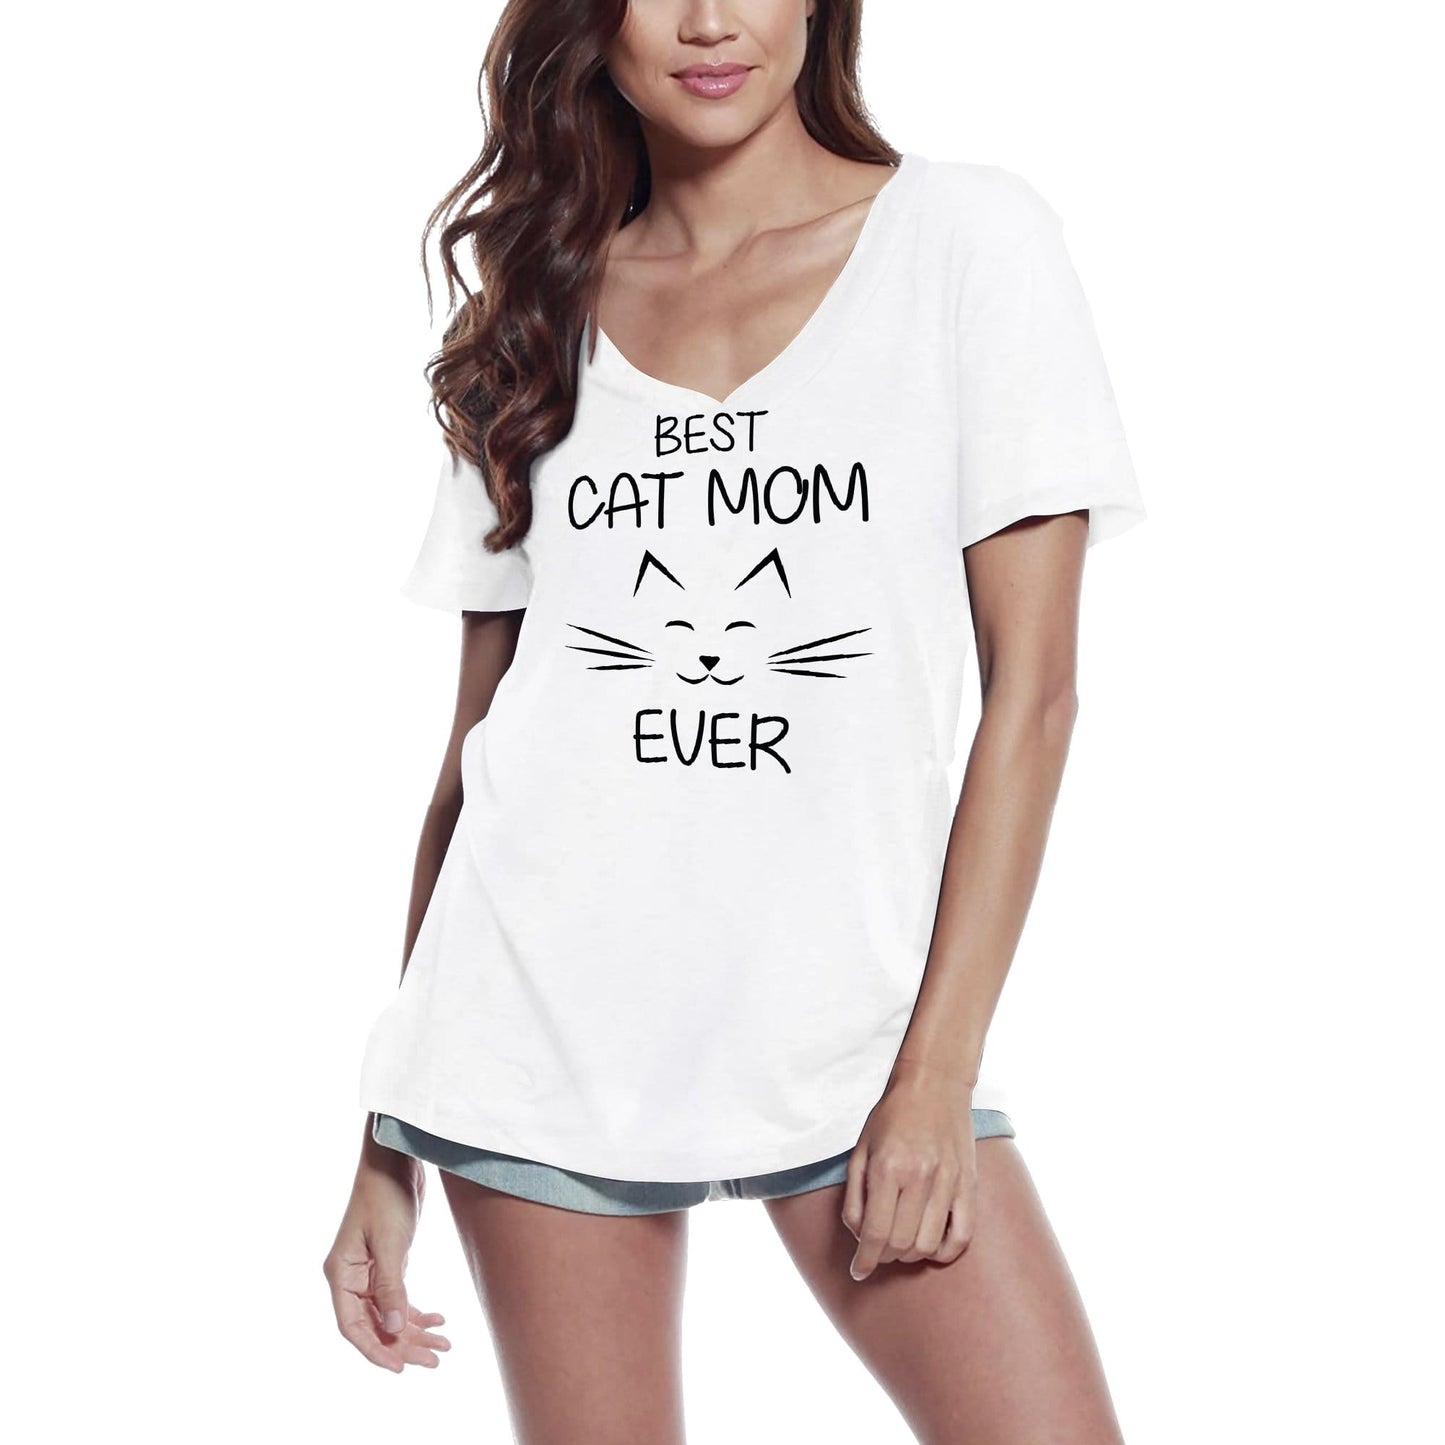 ULTRABASIC Women's T-Shirt Best Cat Mom Ever - Short Sleeve Tee Shirt Tops